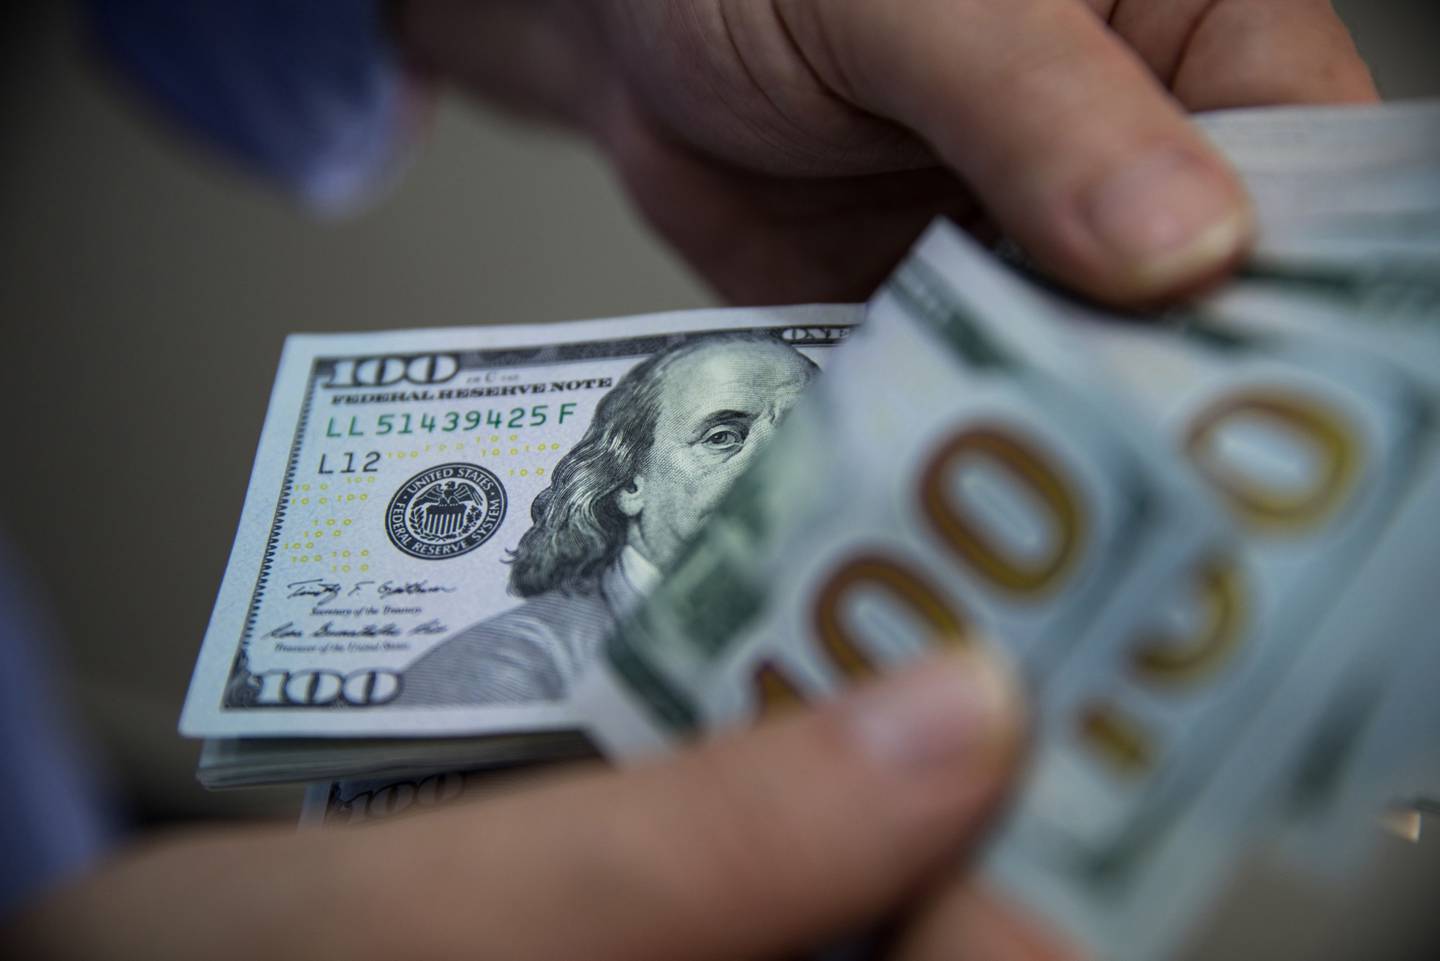 A man counts a bundle of U.S. one-hundred dollar bills in Turkey. Photographer: Kerem Uzel/Bloomberg
Un hombre cuenta un fajo de billetes de cien dólares estadounidenses en Turquía. Fotógrafo: Kerem Uzel / Bloomberg